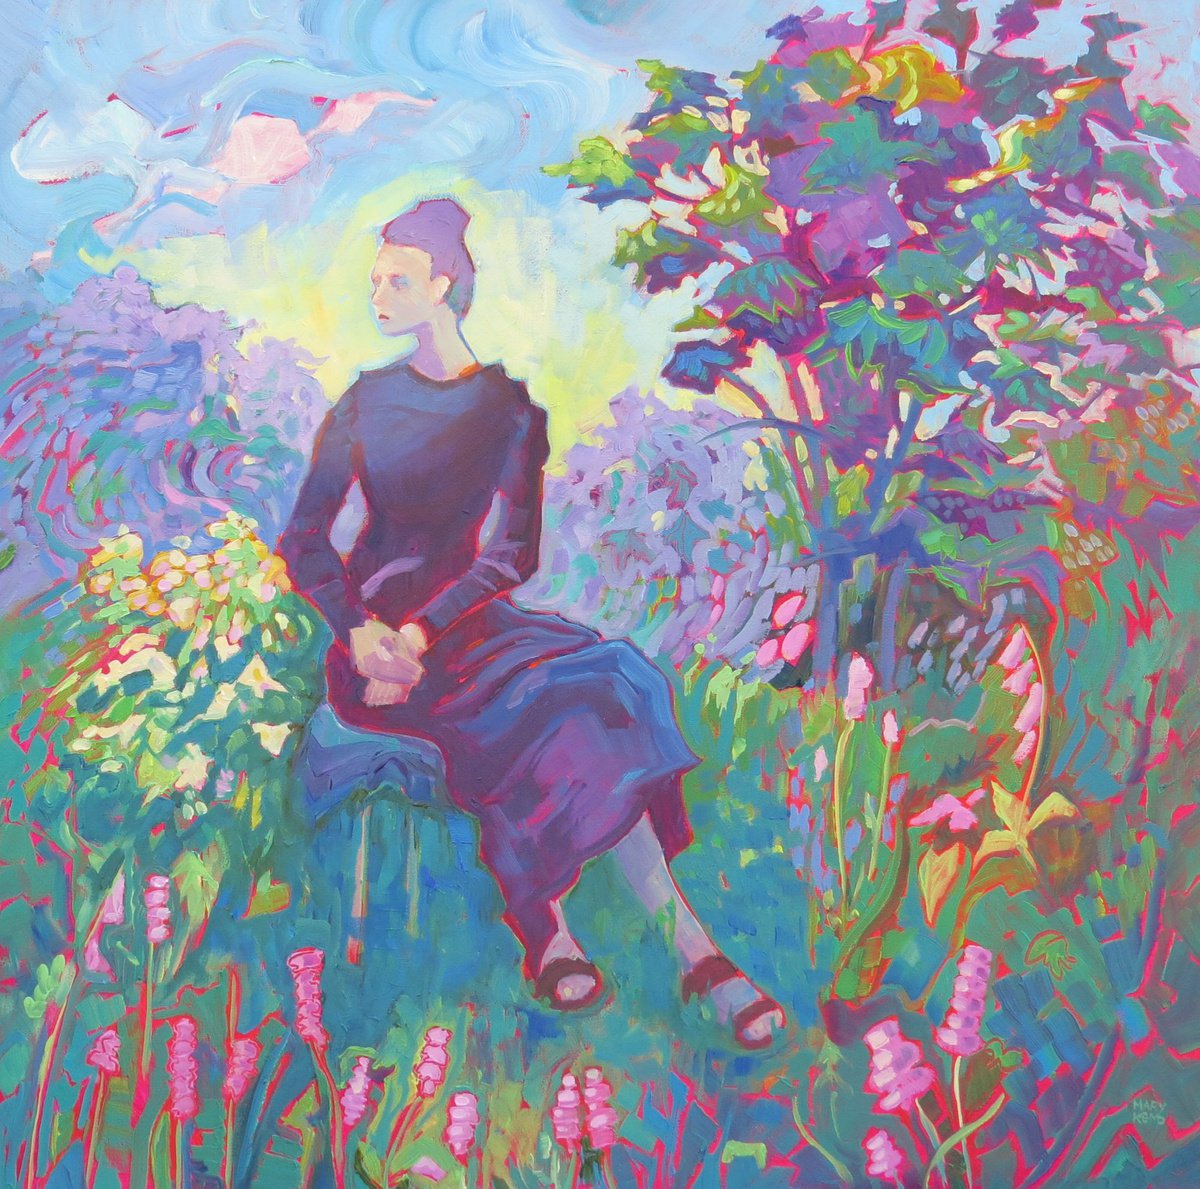 Portrait in a Garden by Mary Kemp